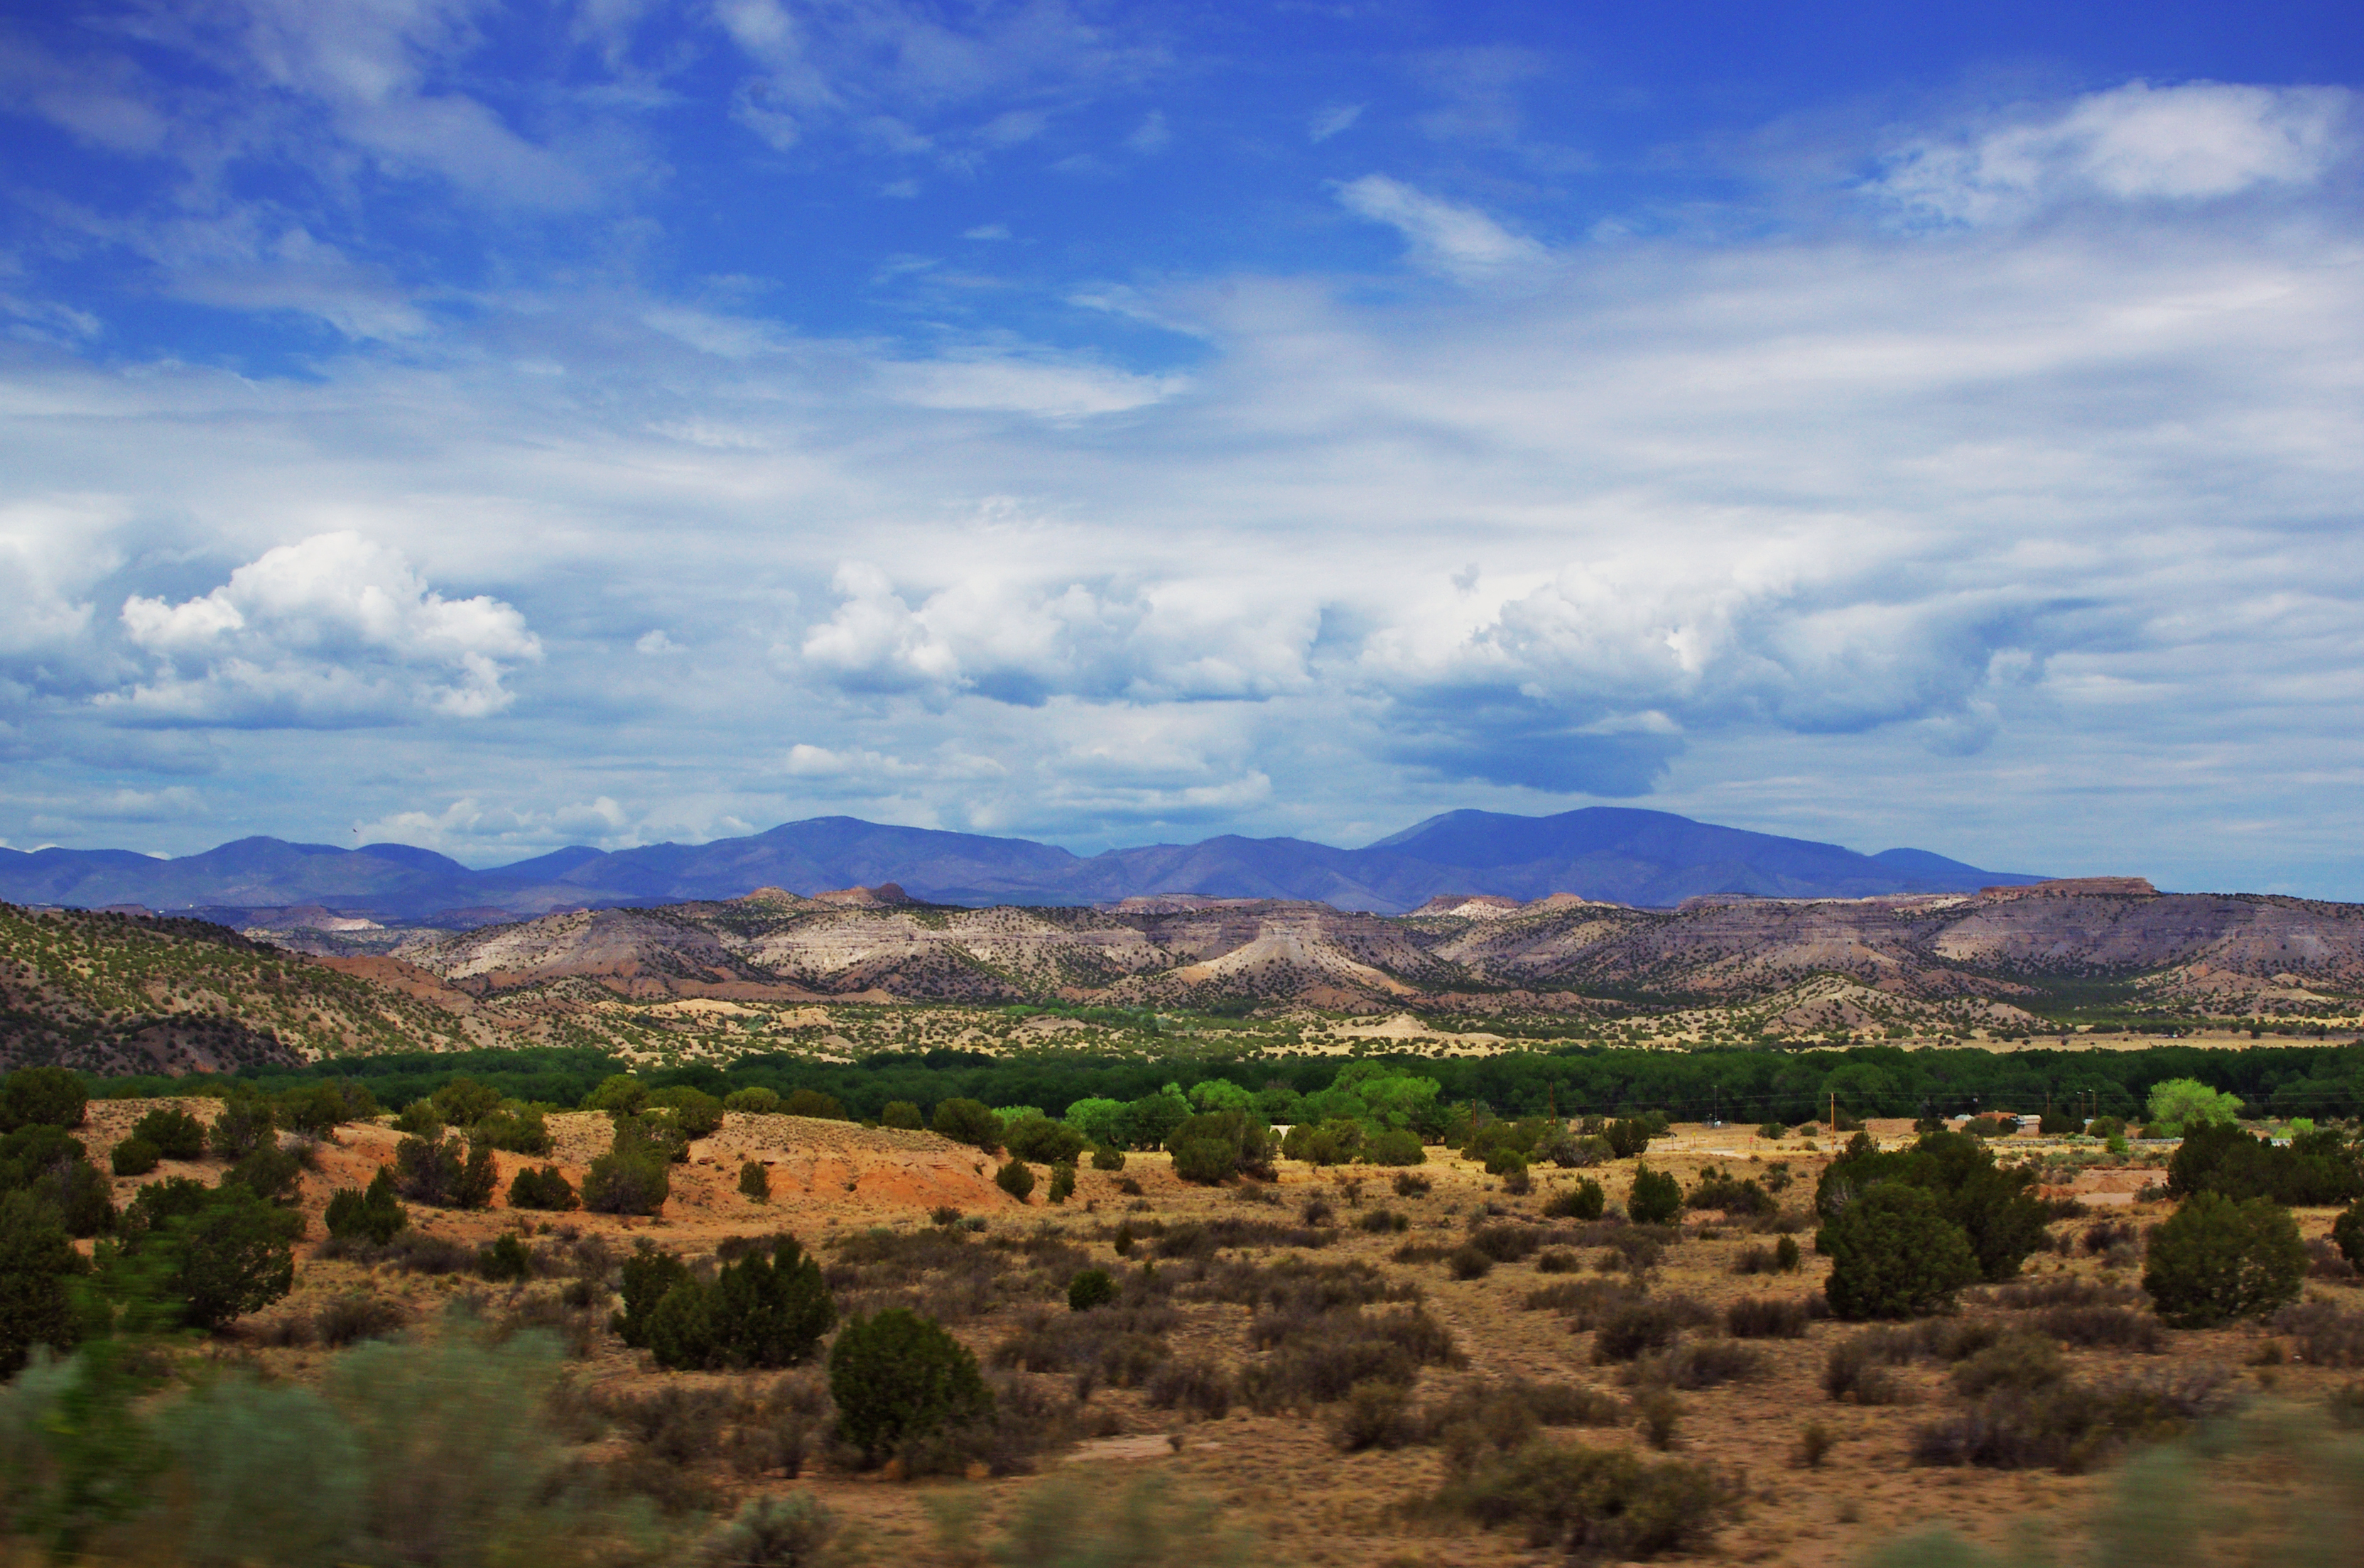 File:Desert Landscape - New Mexico (5989098056).jpg - Wikimedia Commons